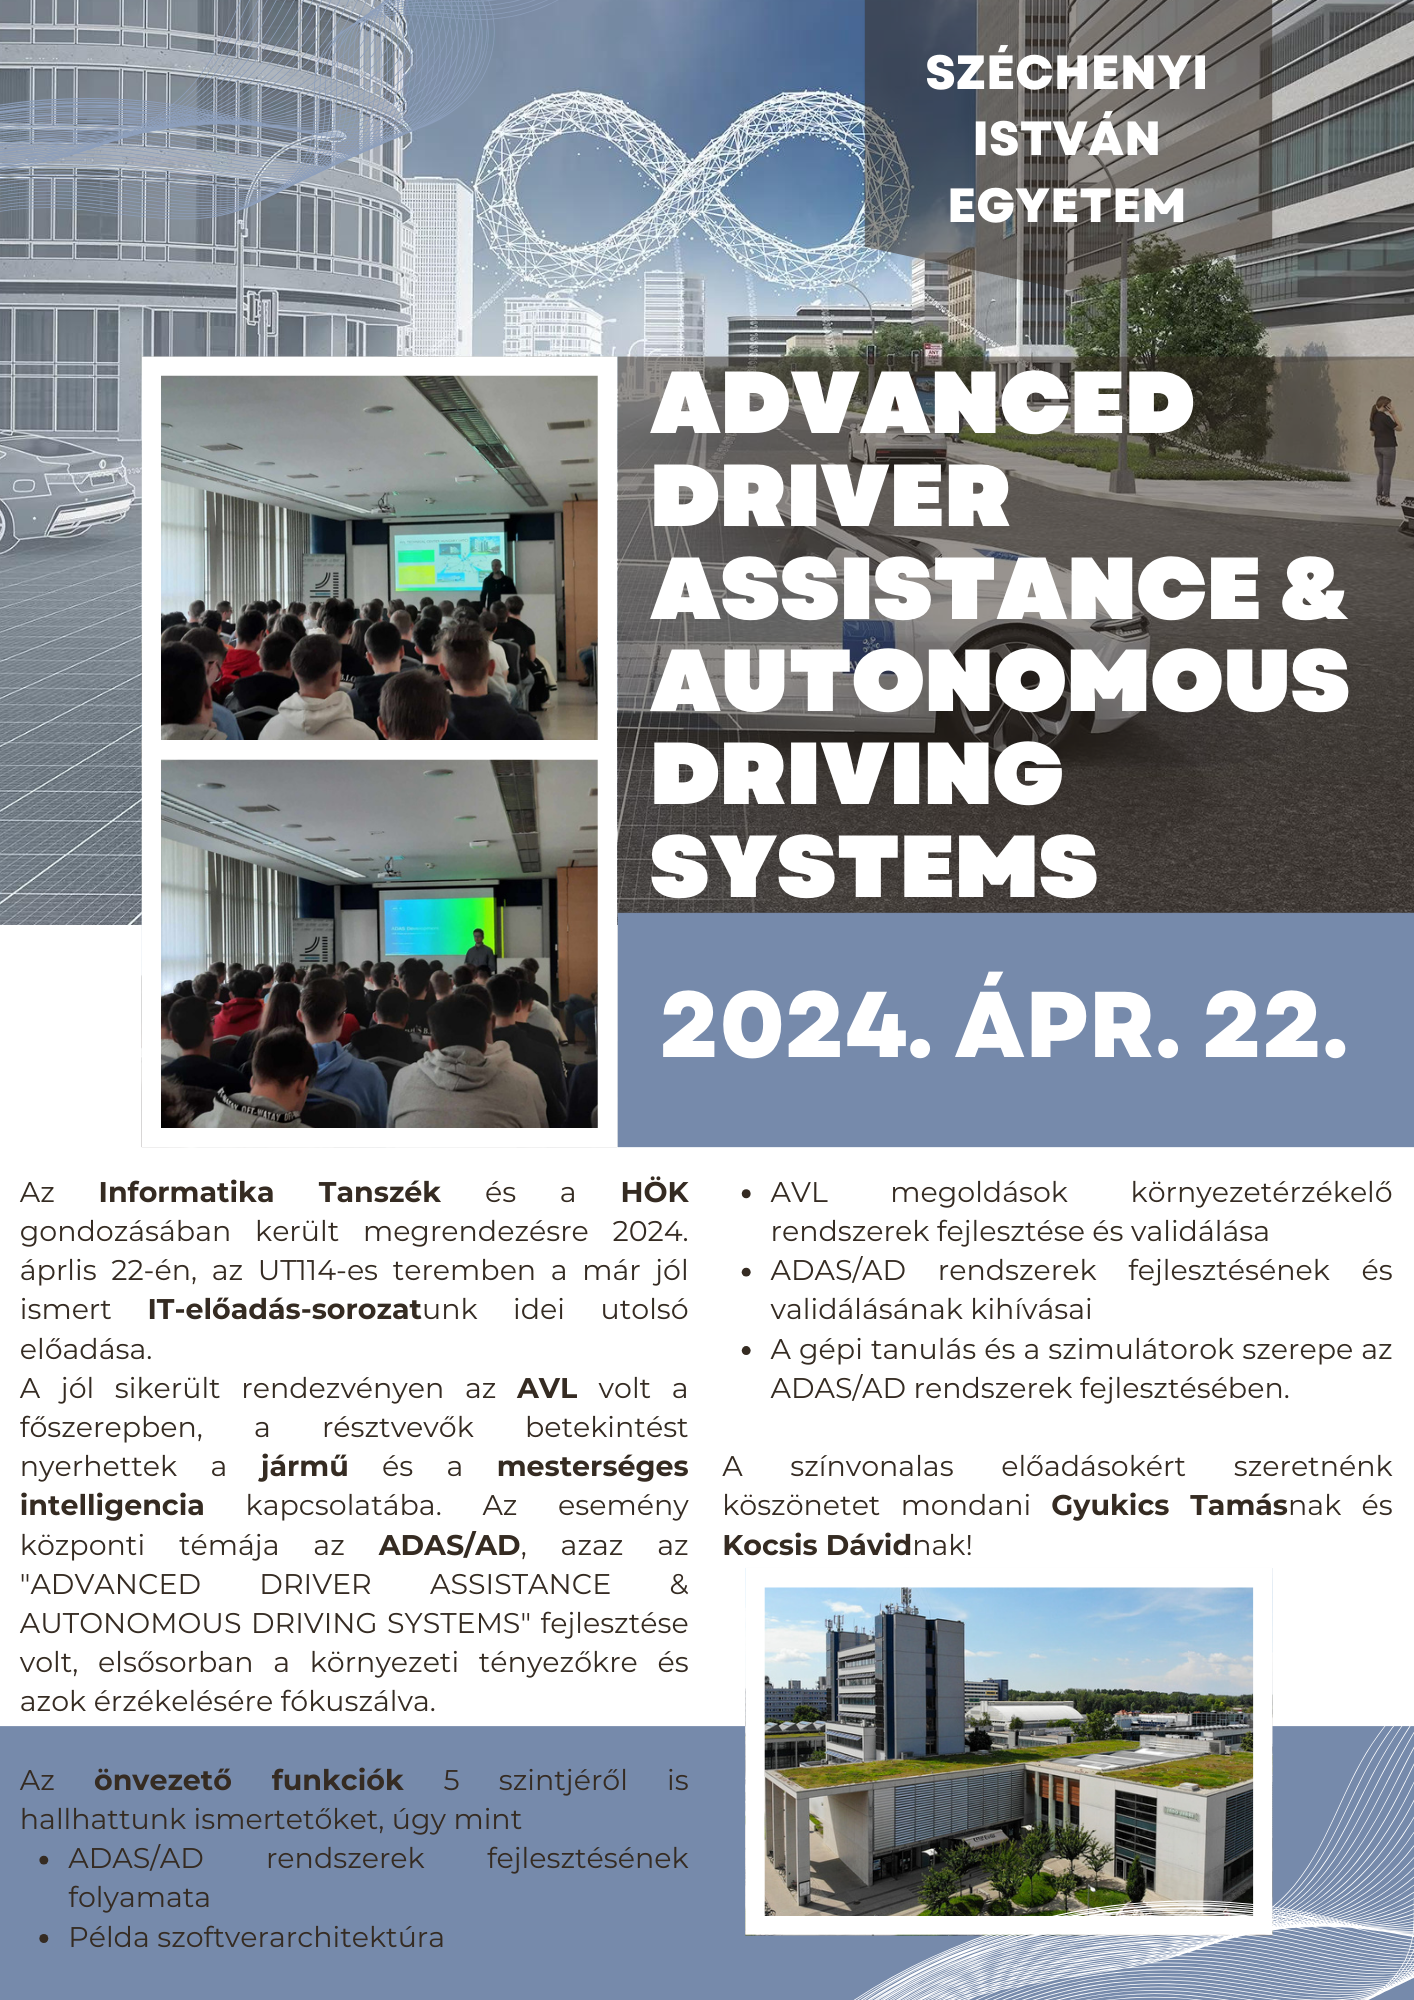 Advanced Driver Assistance & Autonomous Driving Systems